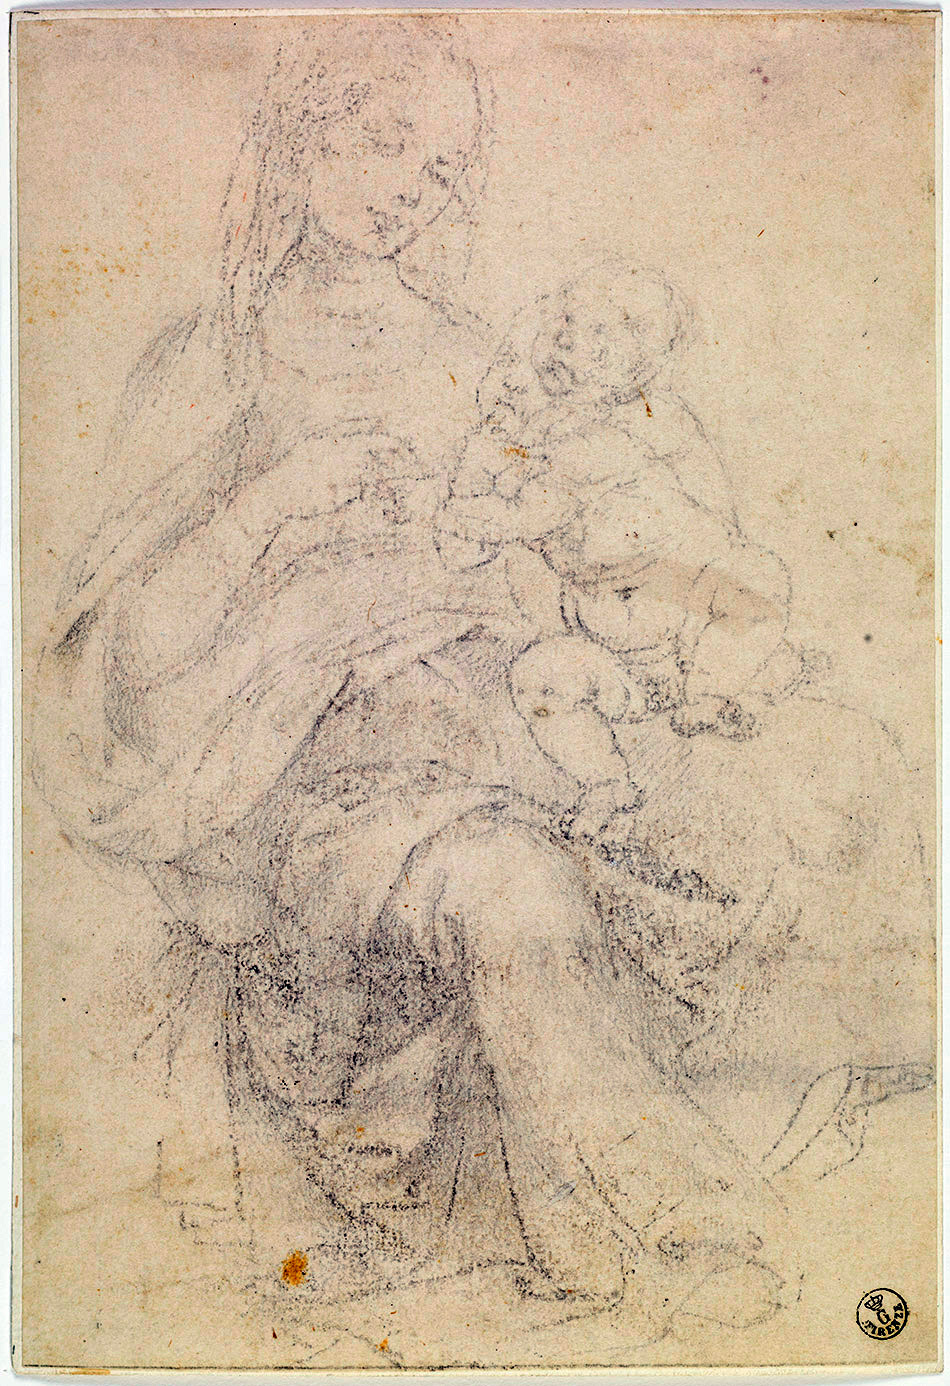 Andrea-del-Verrocchio-or-possibly-Leonard-da-Vinci_Madonna-with-Child-on-her-lap_950-W